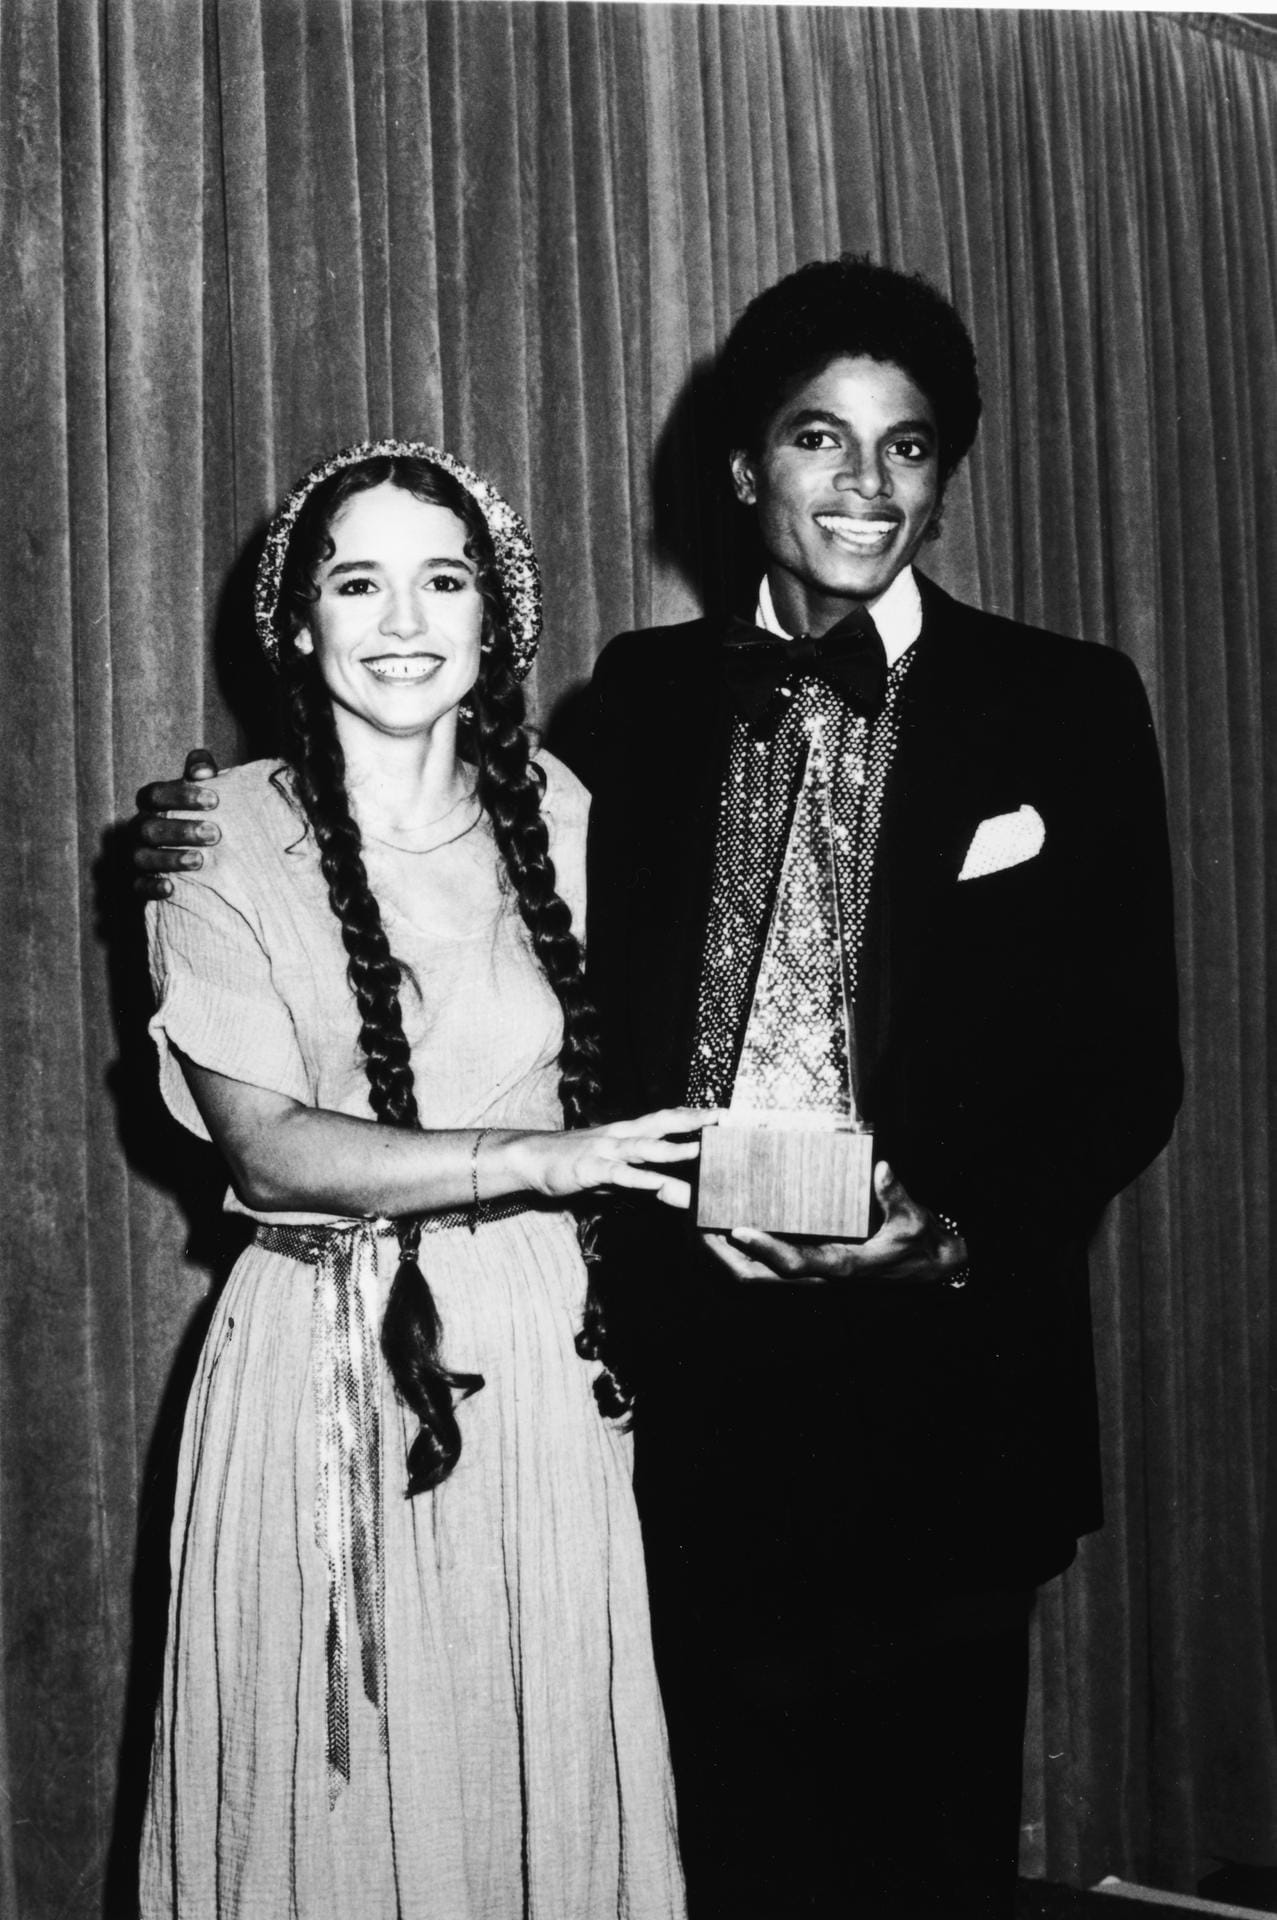 Januar 1980: Zusammen mit Popsängerin Nicolette Larson präsentiert Michael Jackson den Award für die beste Pop/ Rock Band. Den Preis haben die Bee Gees erhalten.